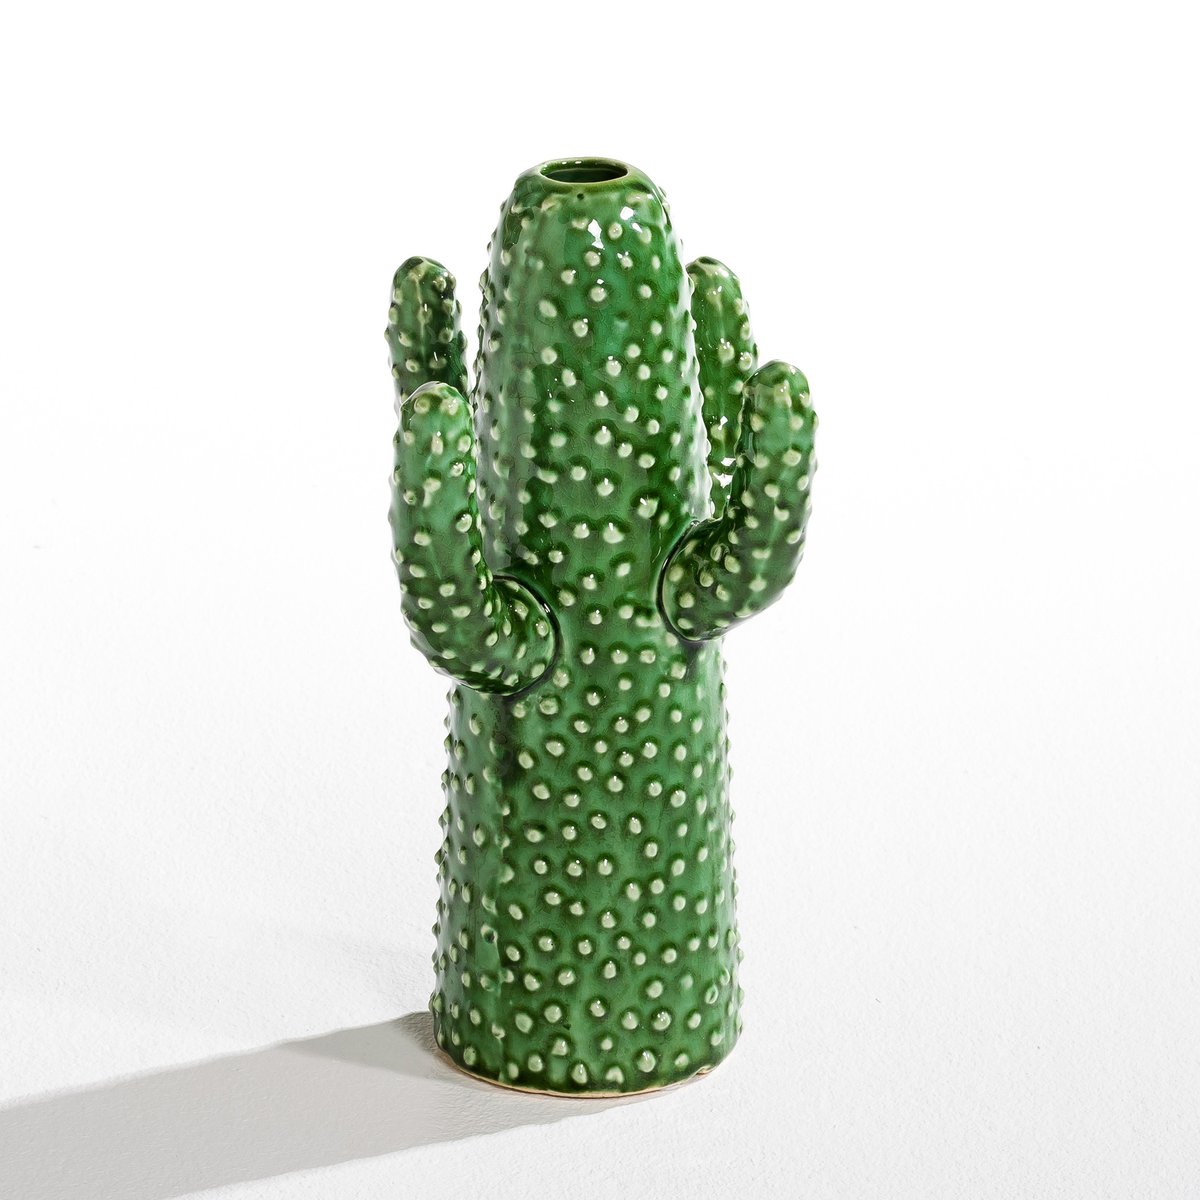 Ваза La Redoute Cactus высота см дизайн М Михельссен для Serax единый размер зеленый